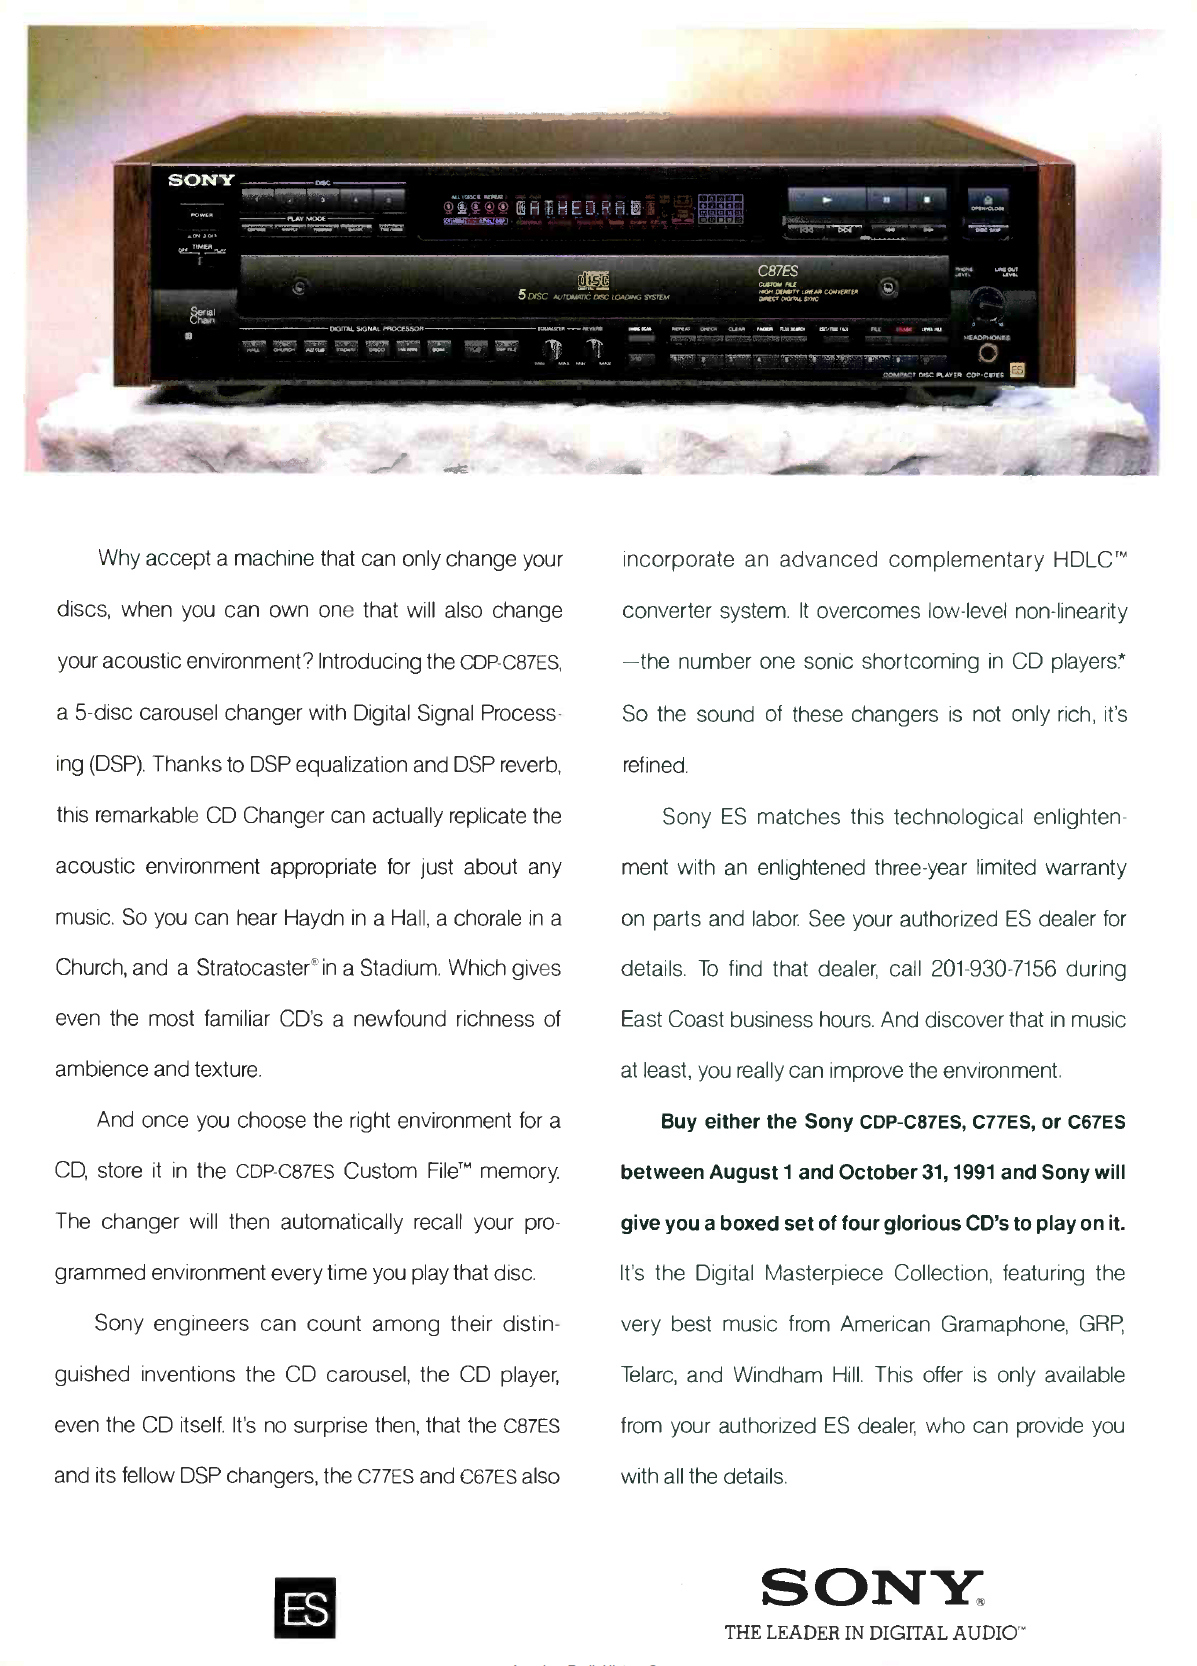 Sony CDP-C 87 ES-Werbung-1991.jpg